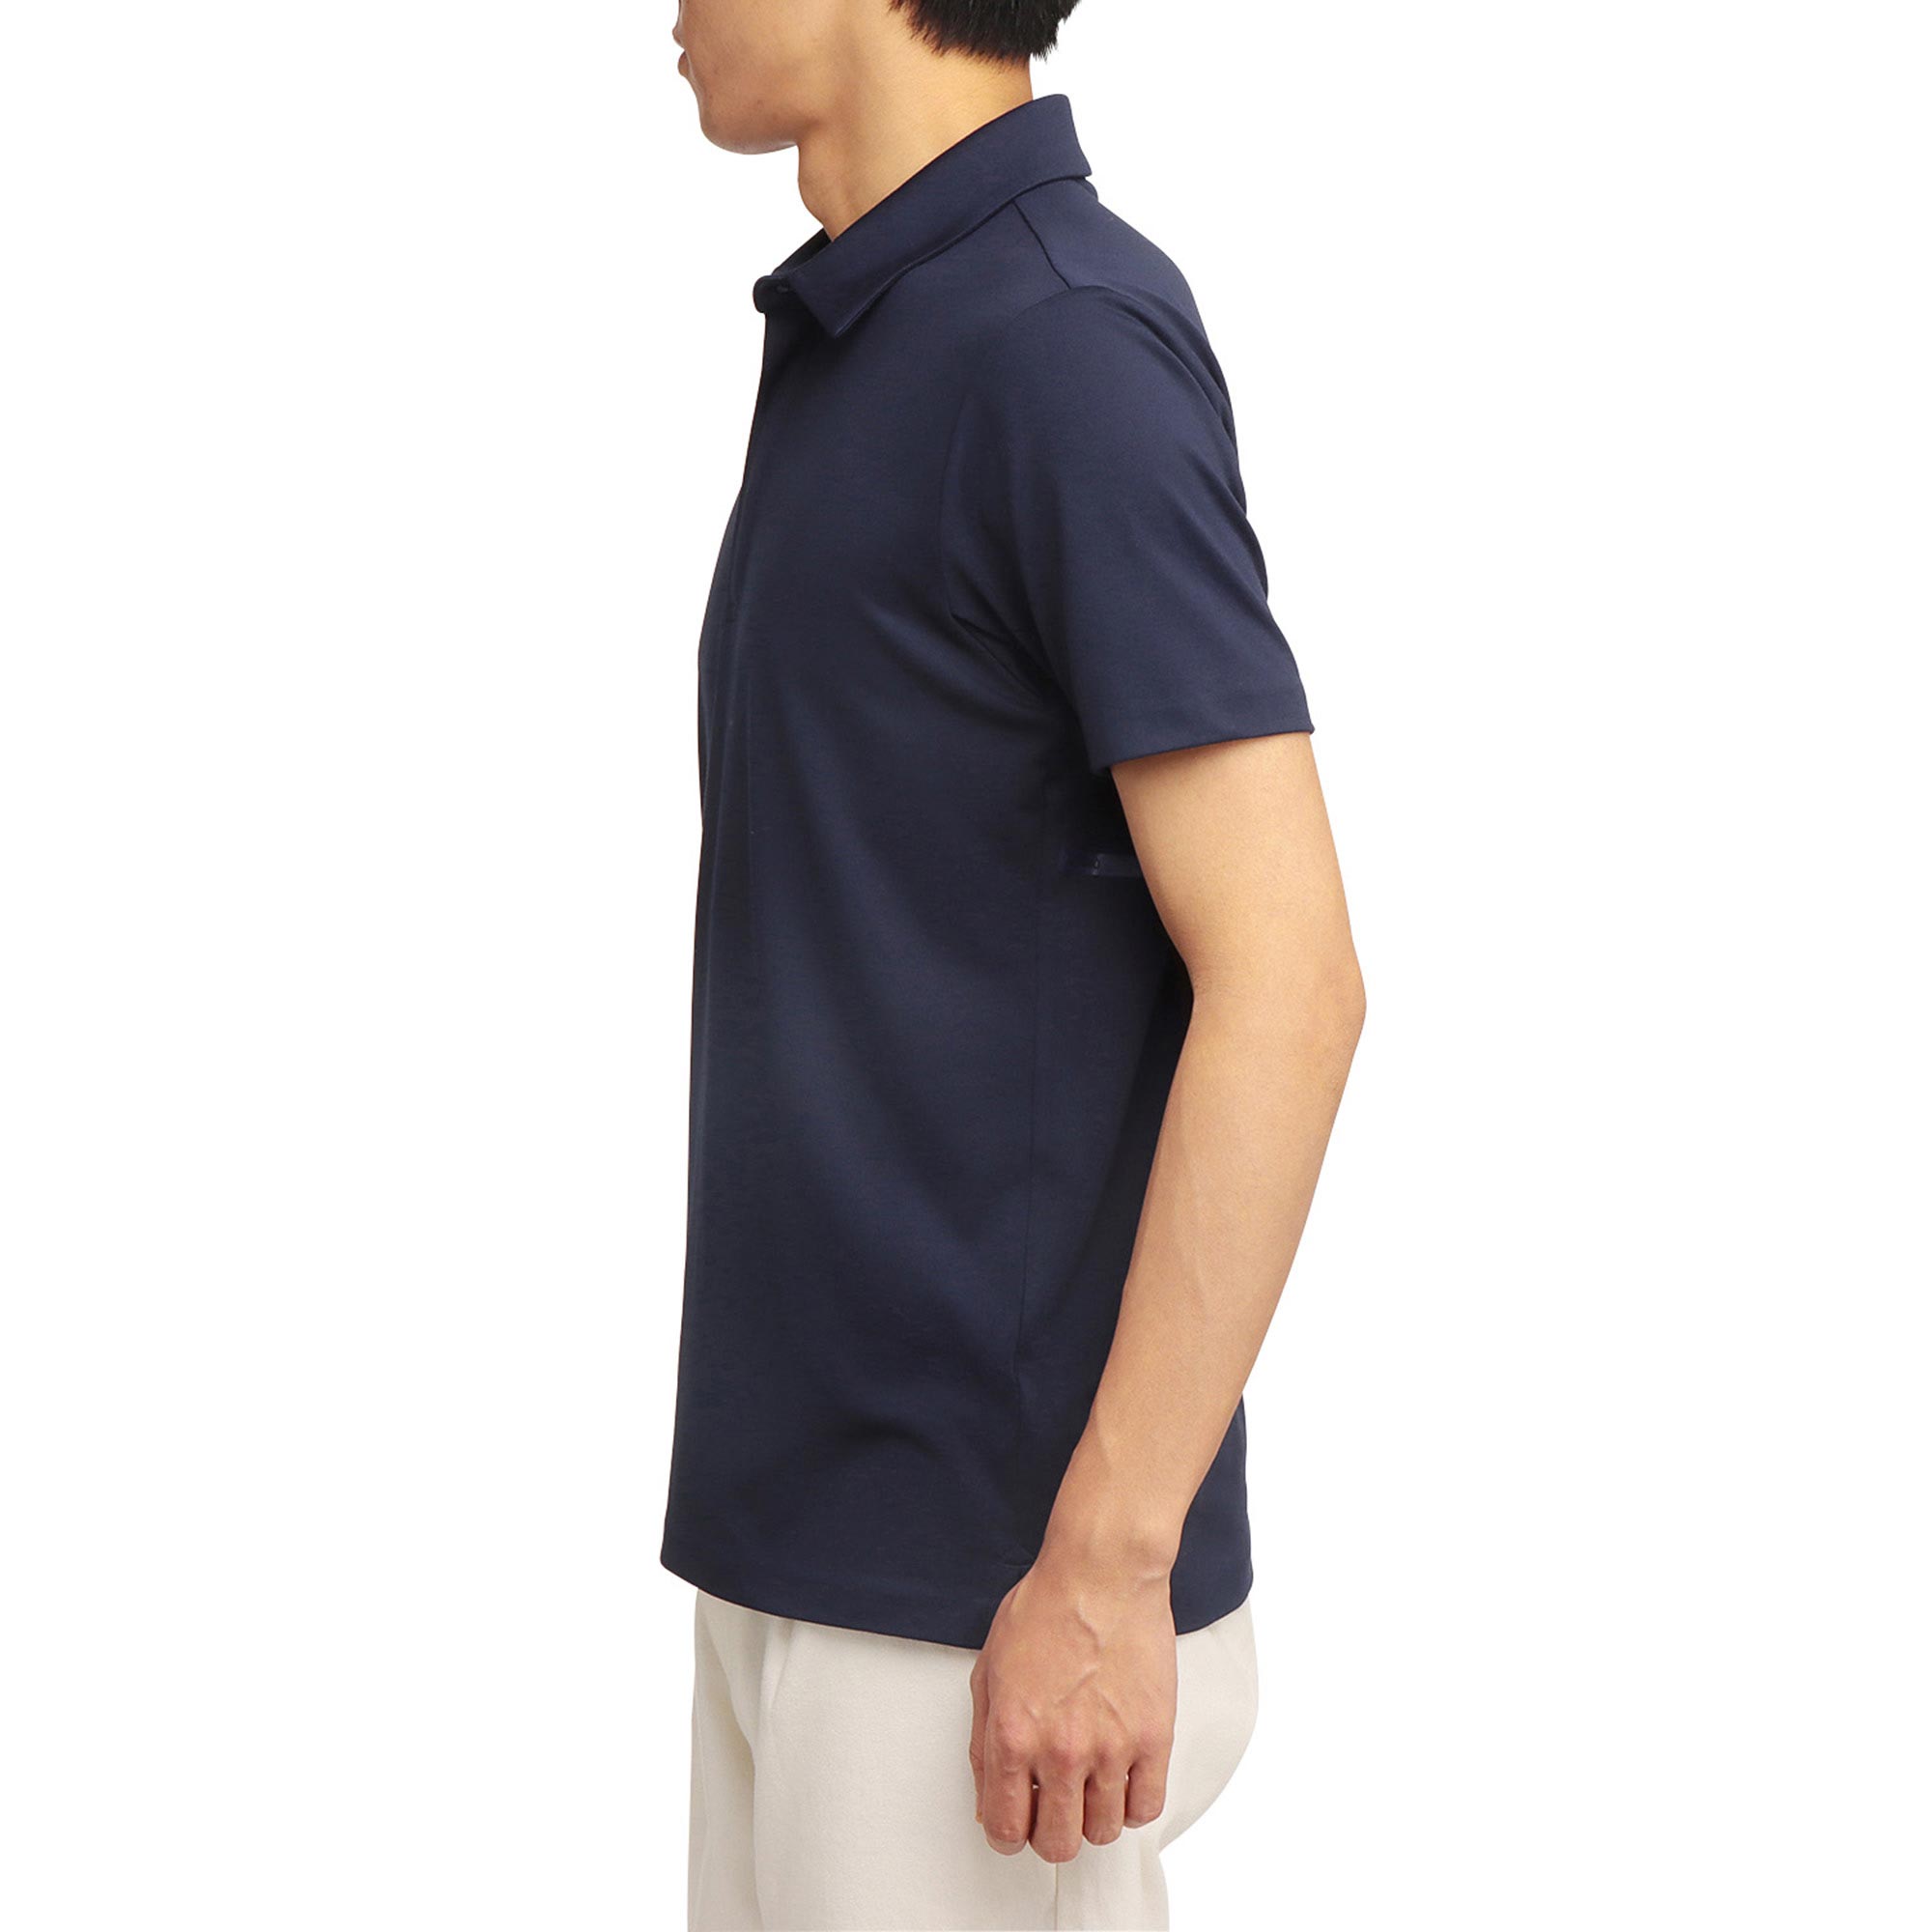 ジップアップ半袖シャツ[メンズ]|E2MA1501|半袖シャツ|ゴルフウエア